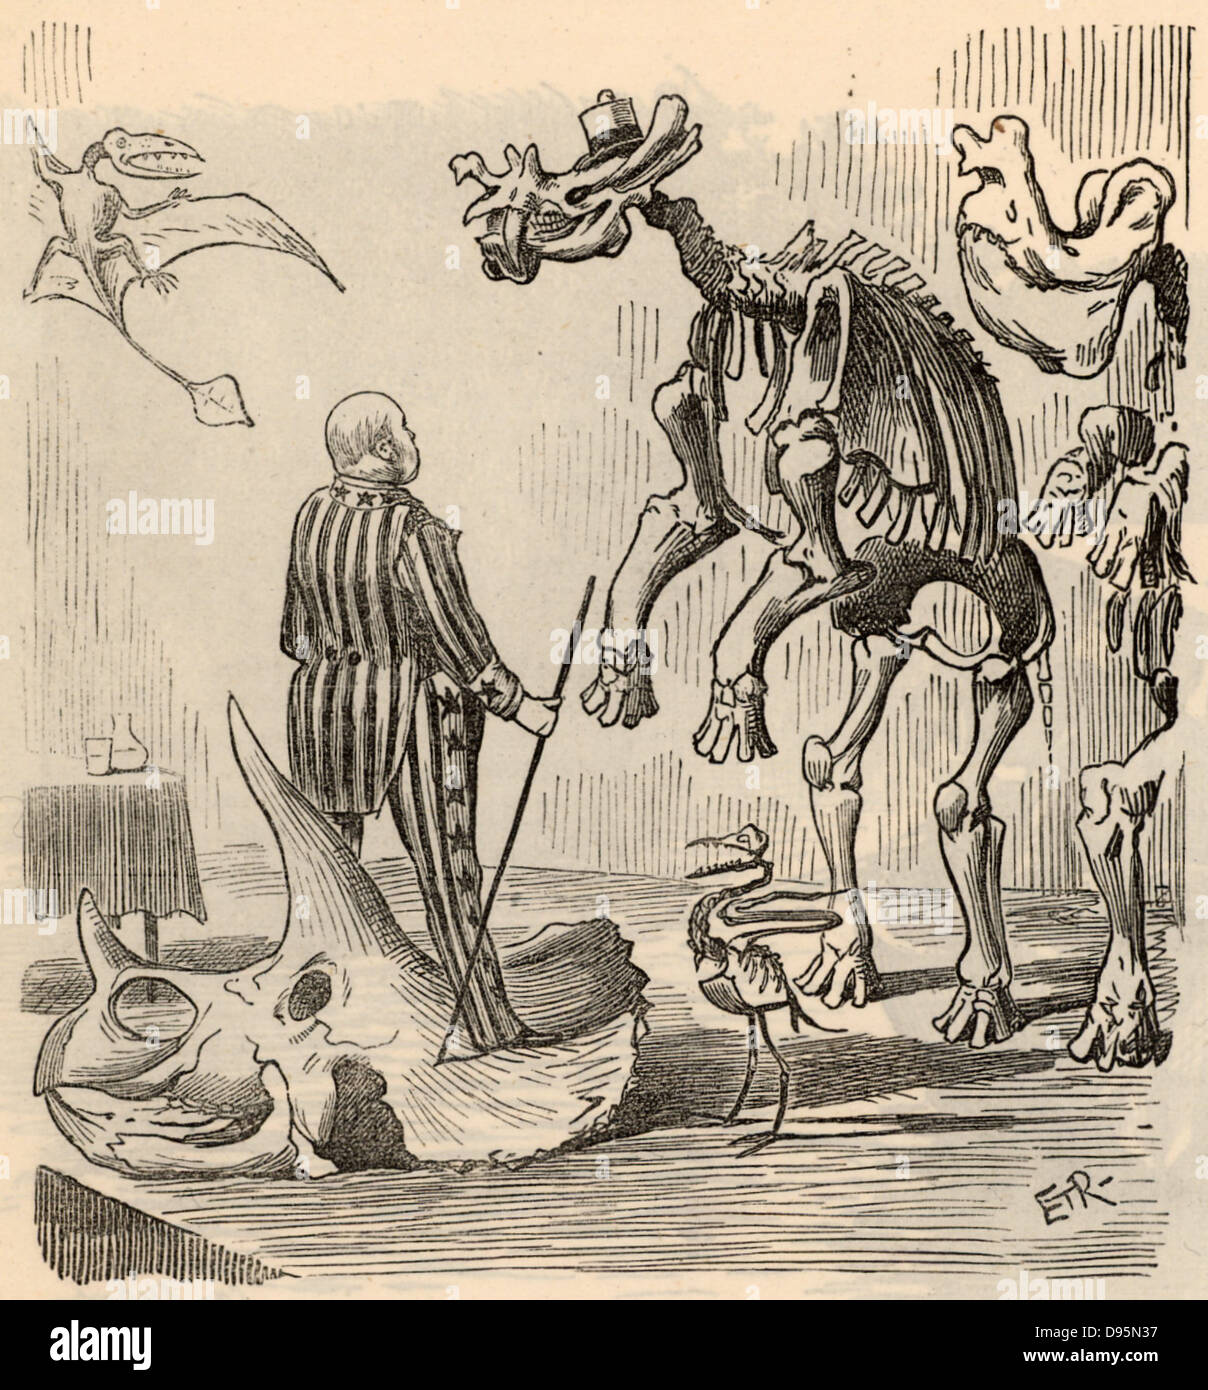 Othniel Charles Marsh (1831-1899) amerikanischer Paläontologe. Erster Professor für Paläontologie an der Universität Yale. Marsh entdeckt rund 1.000 fossile Wirbeltiere und organisierte Expeditionen, vor allem in Nebraska und Colorado. Cartoon von 'Lochen' (London, 13. September 1890). Stockfoto